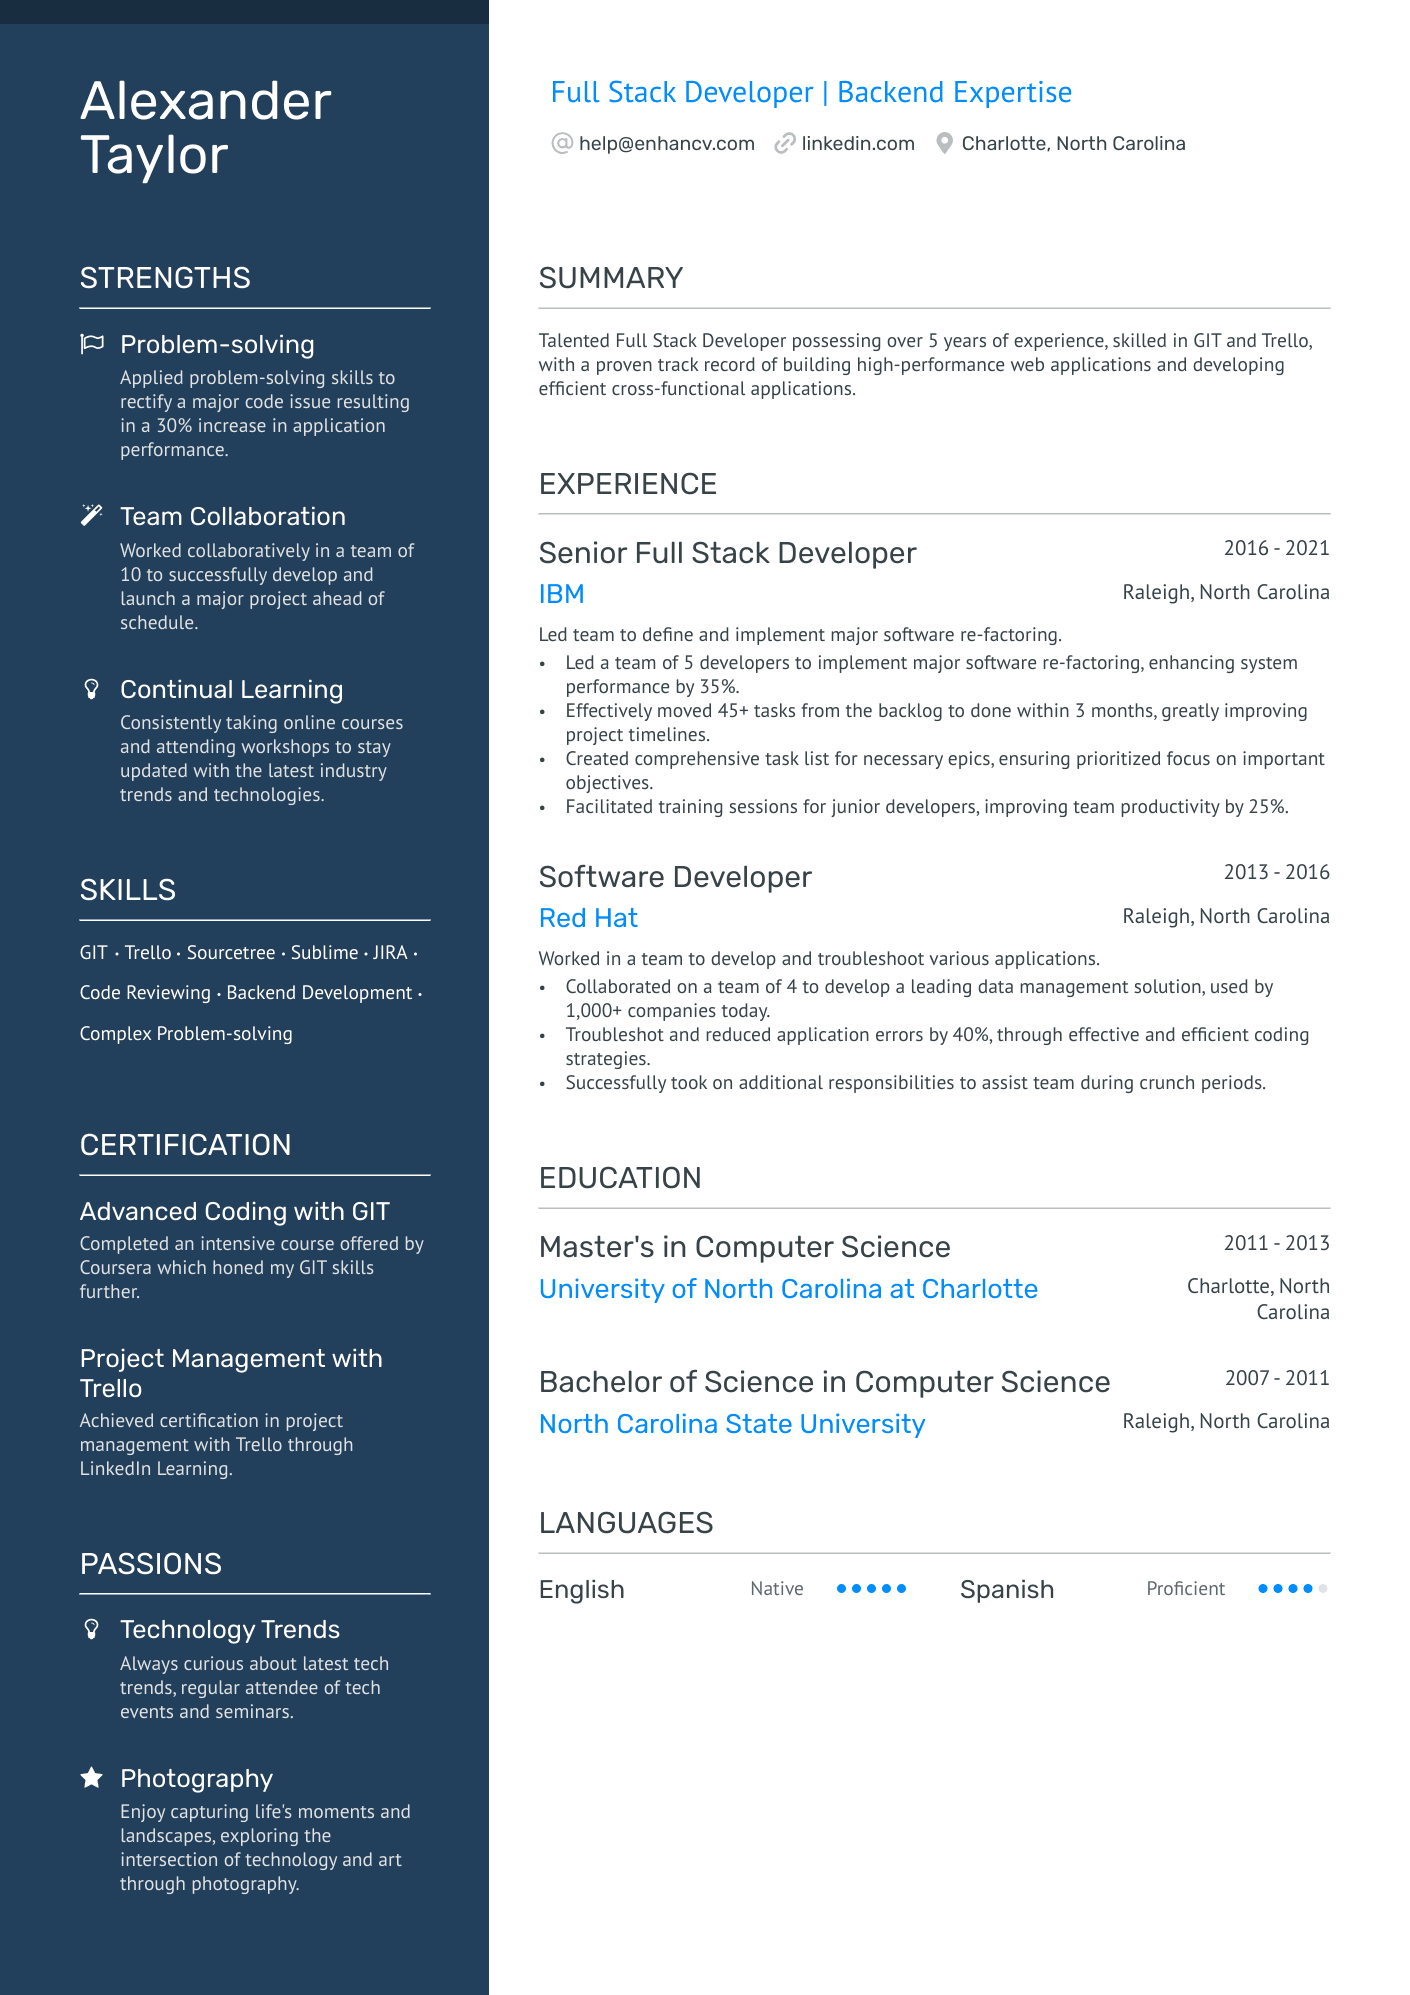 Full Stack Web Developer Resume Example